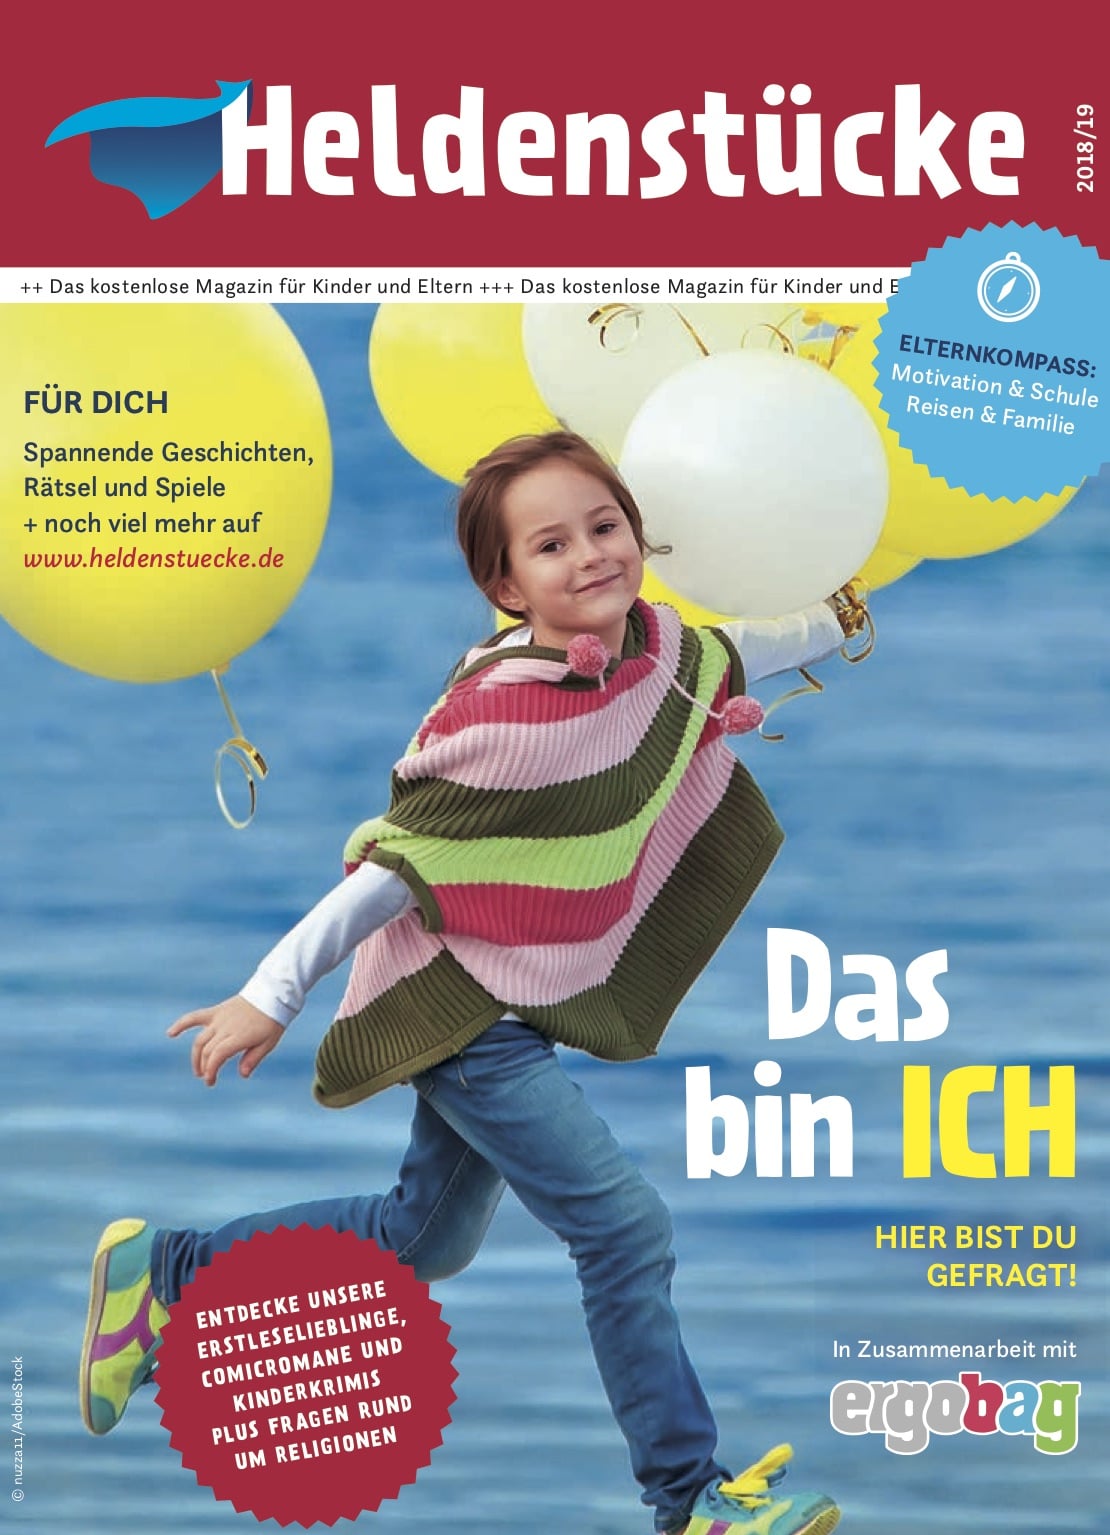 Das aktuelle Heldenstücke-Magazin - in Zusammenarbeit mit ergobag | Mehr Infos auf Mamaskind.de